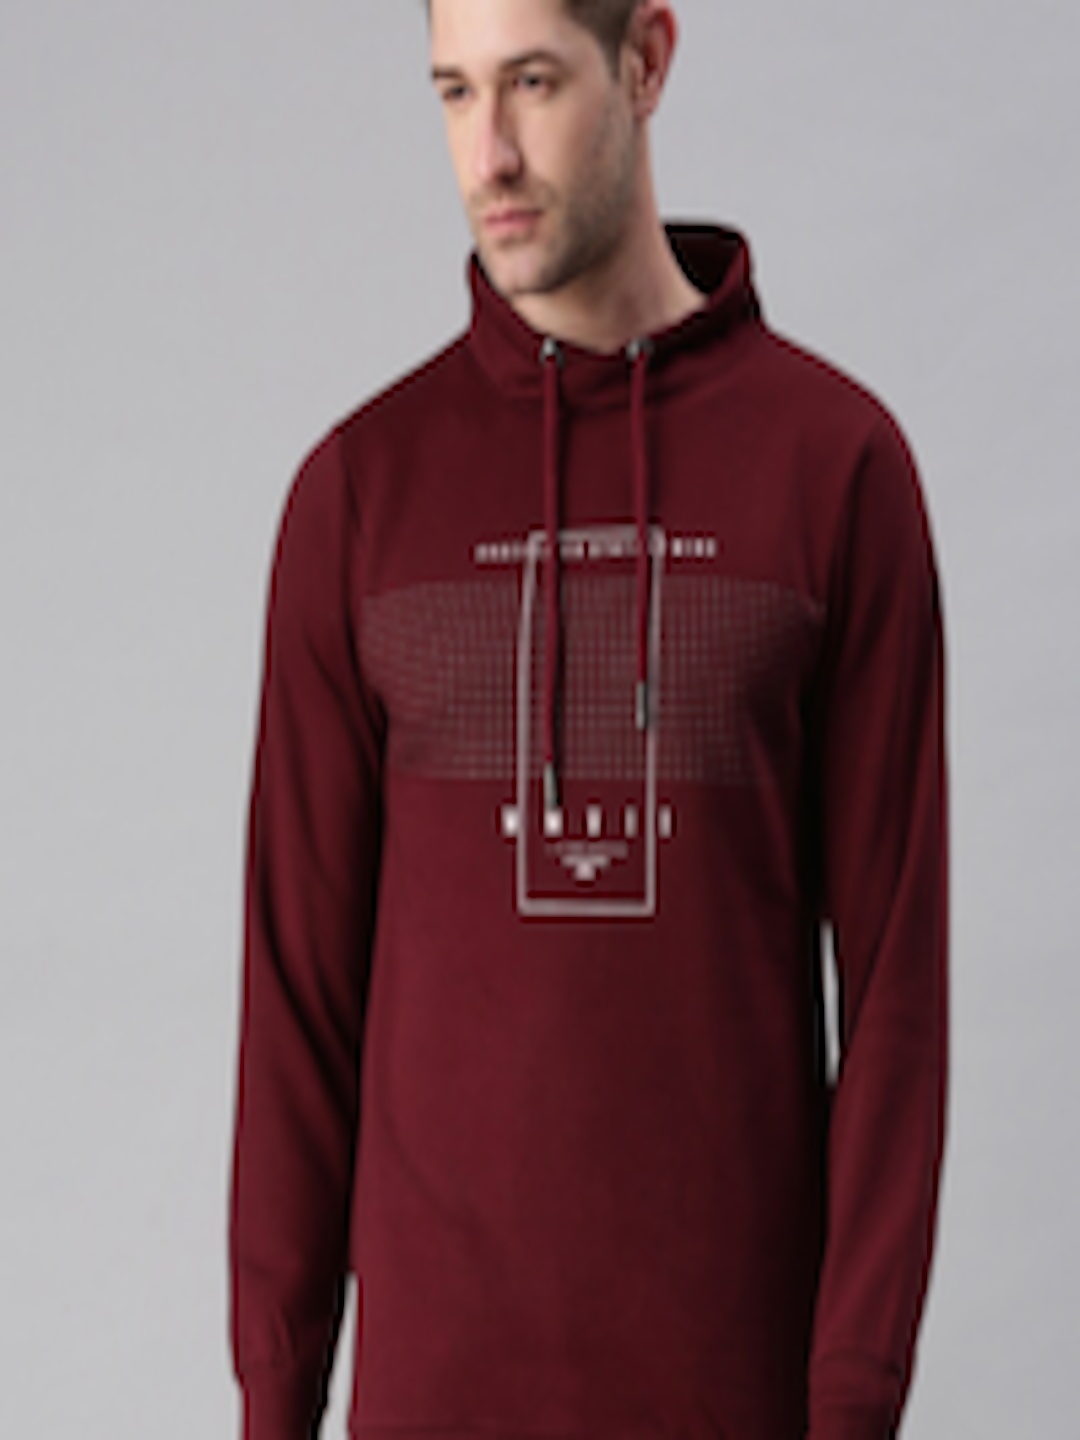 Buy SHOWOFF Men Maroon Printed Hooded Sweatshirt - Sweatshirts for Men ...